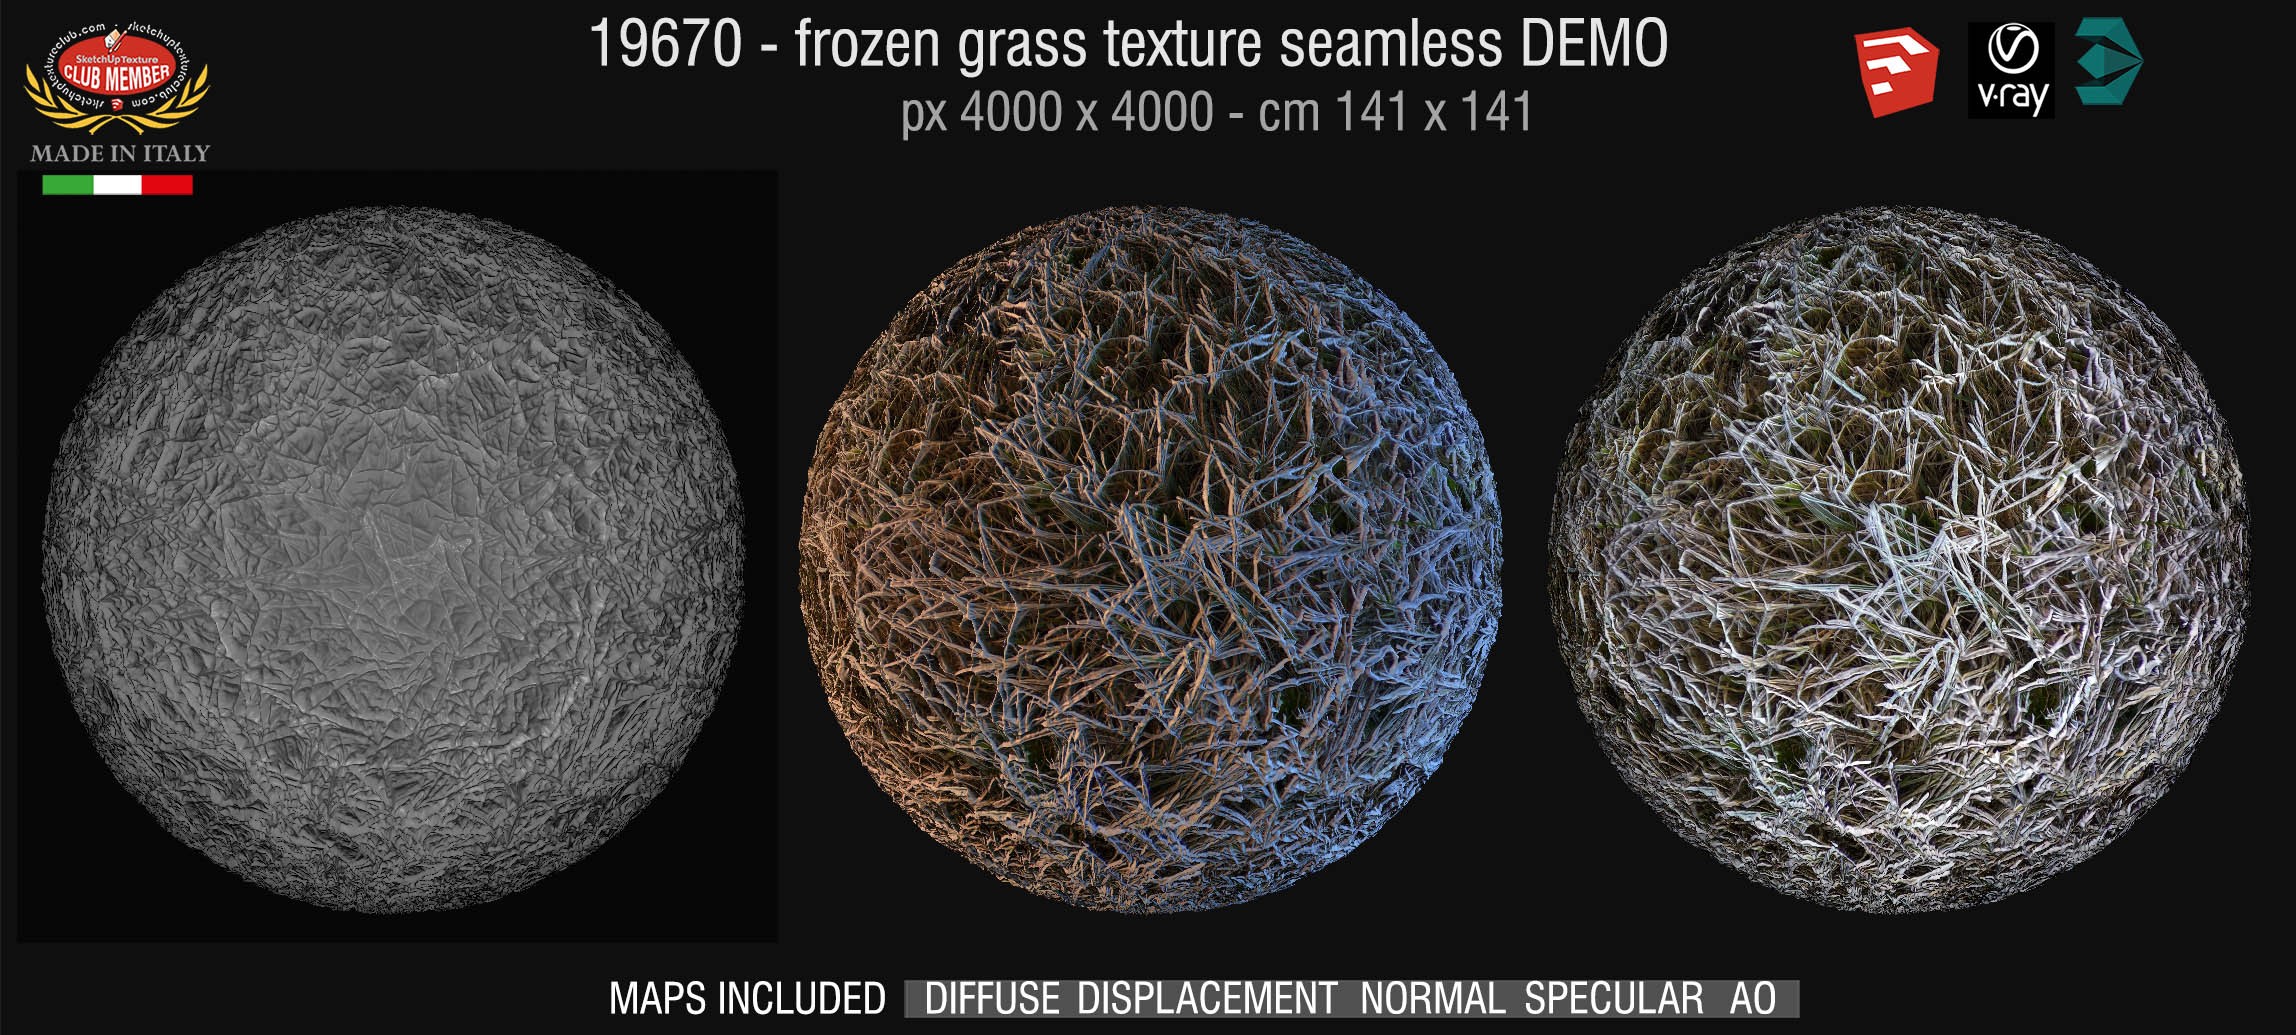 19670 HR Frozen grass texture + maps DEMO